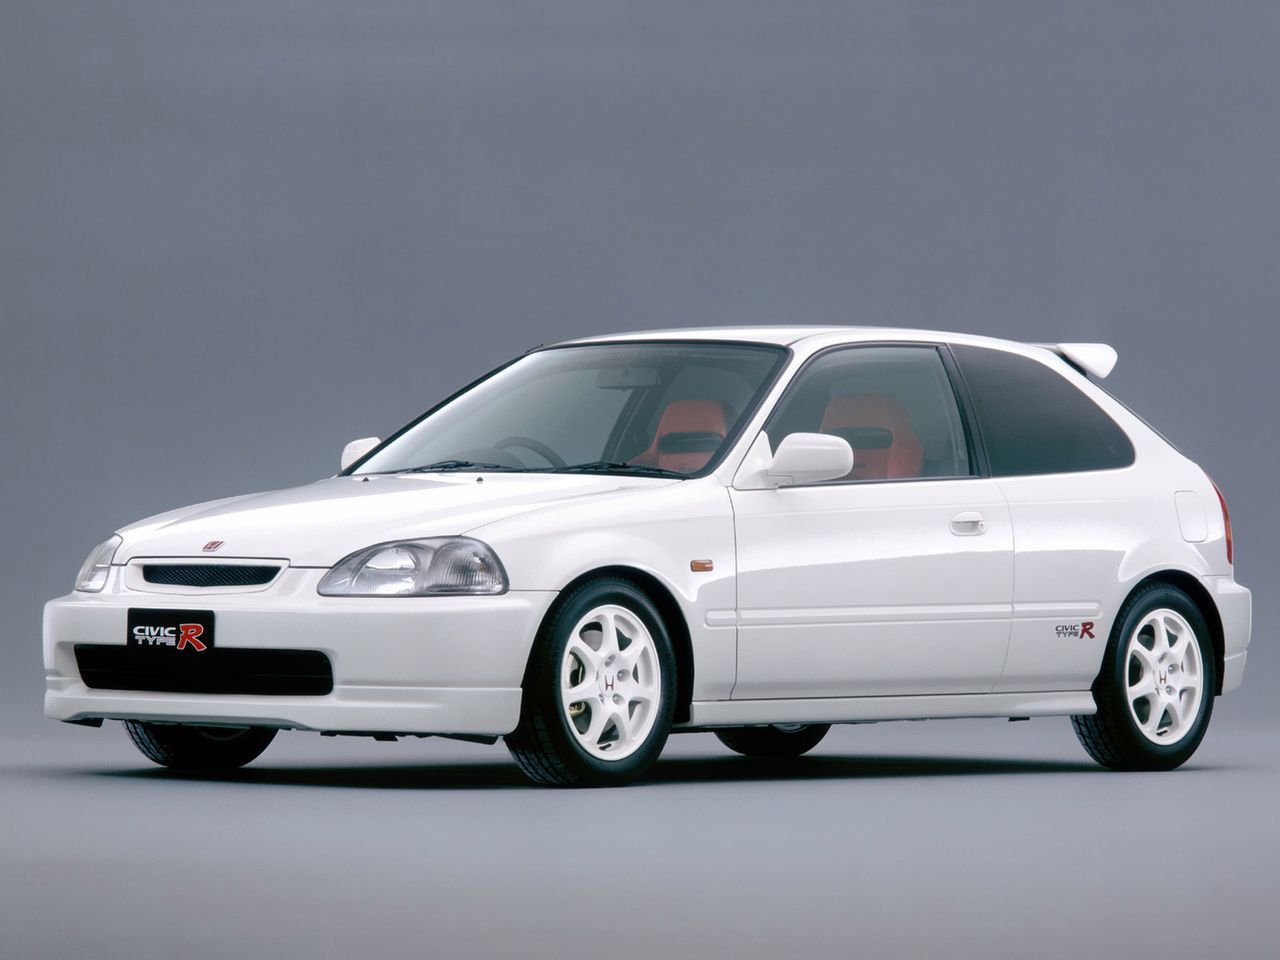 1997 Honda Civic Type-R (EK9)